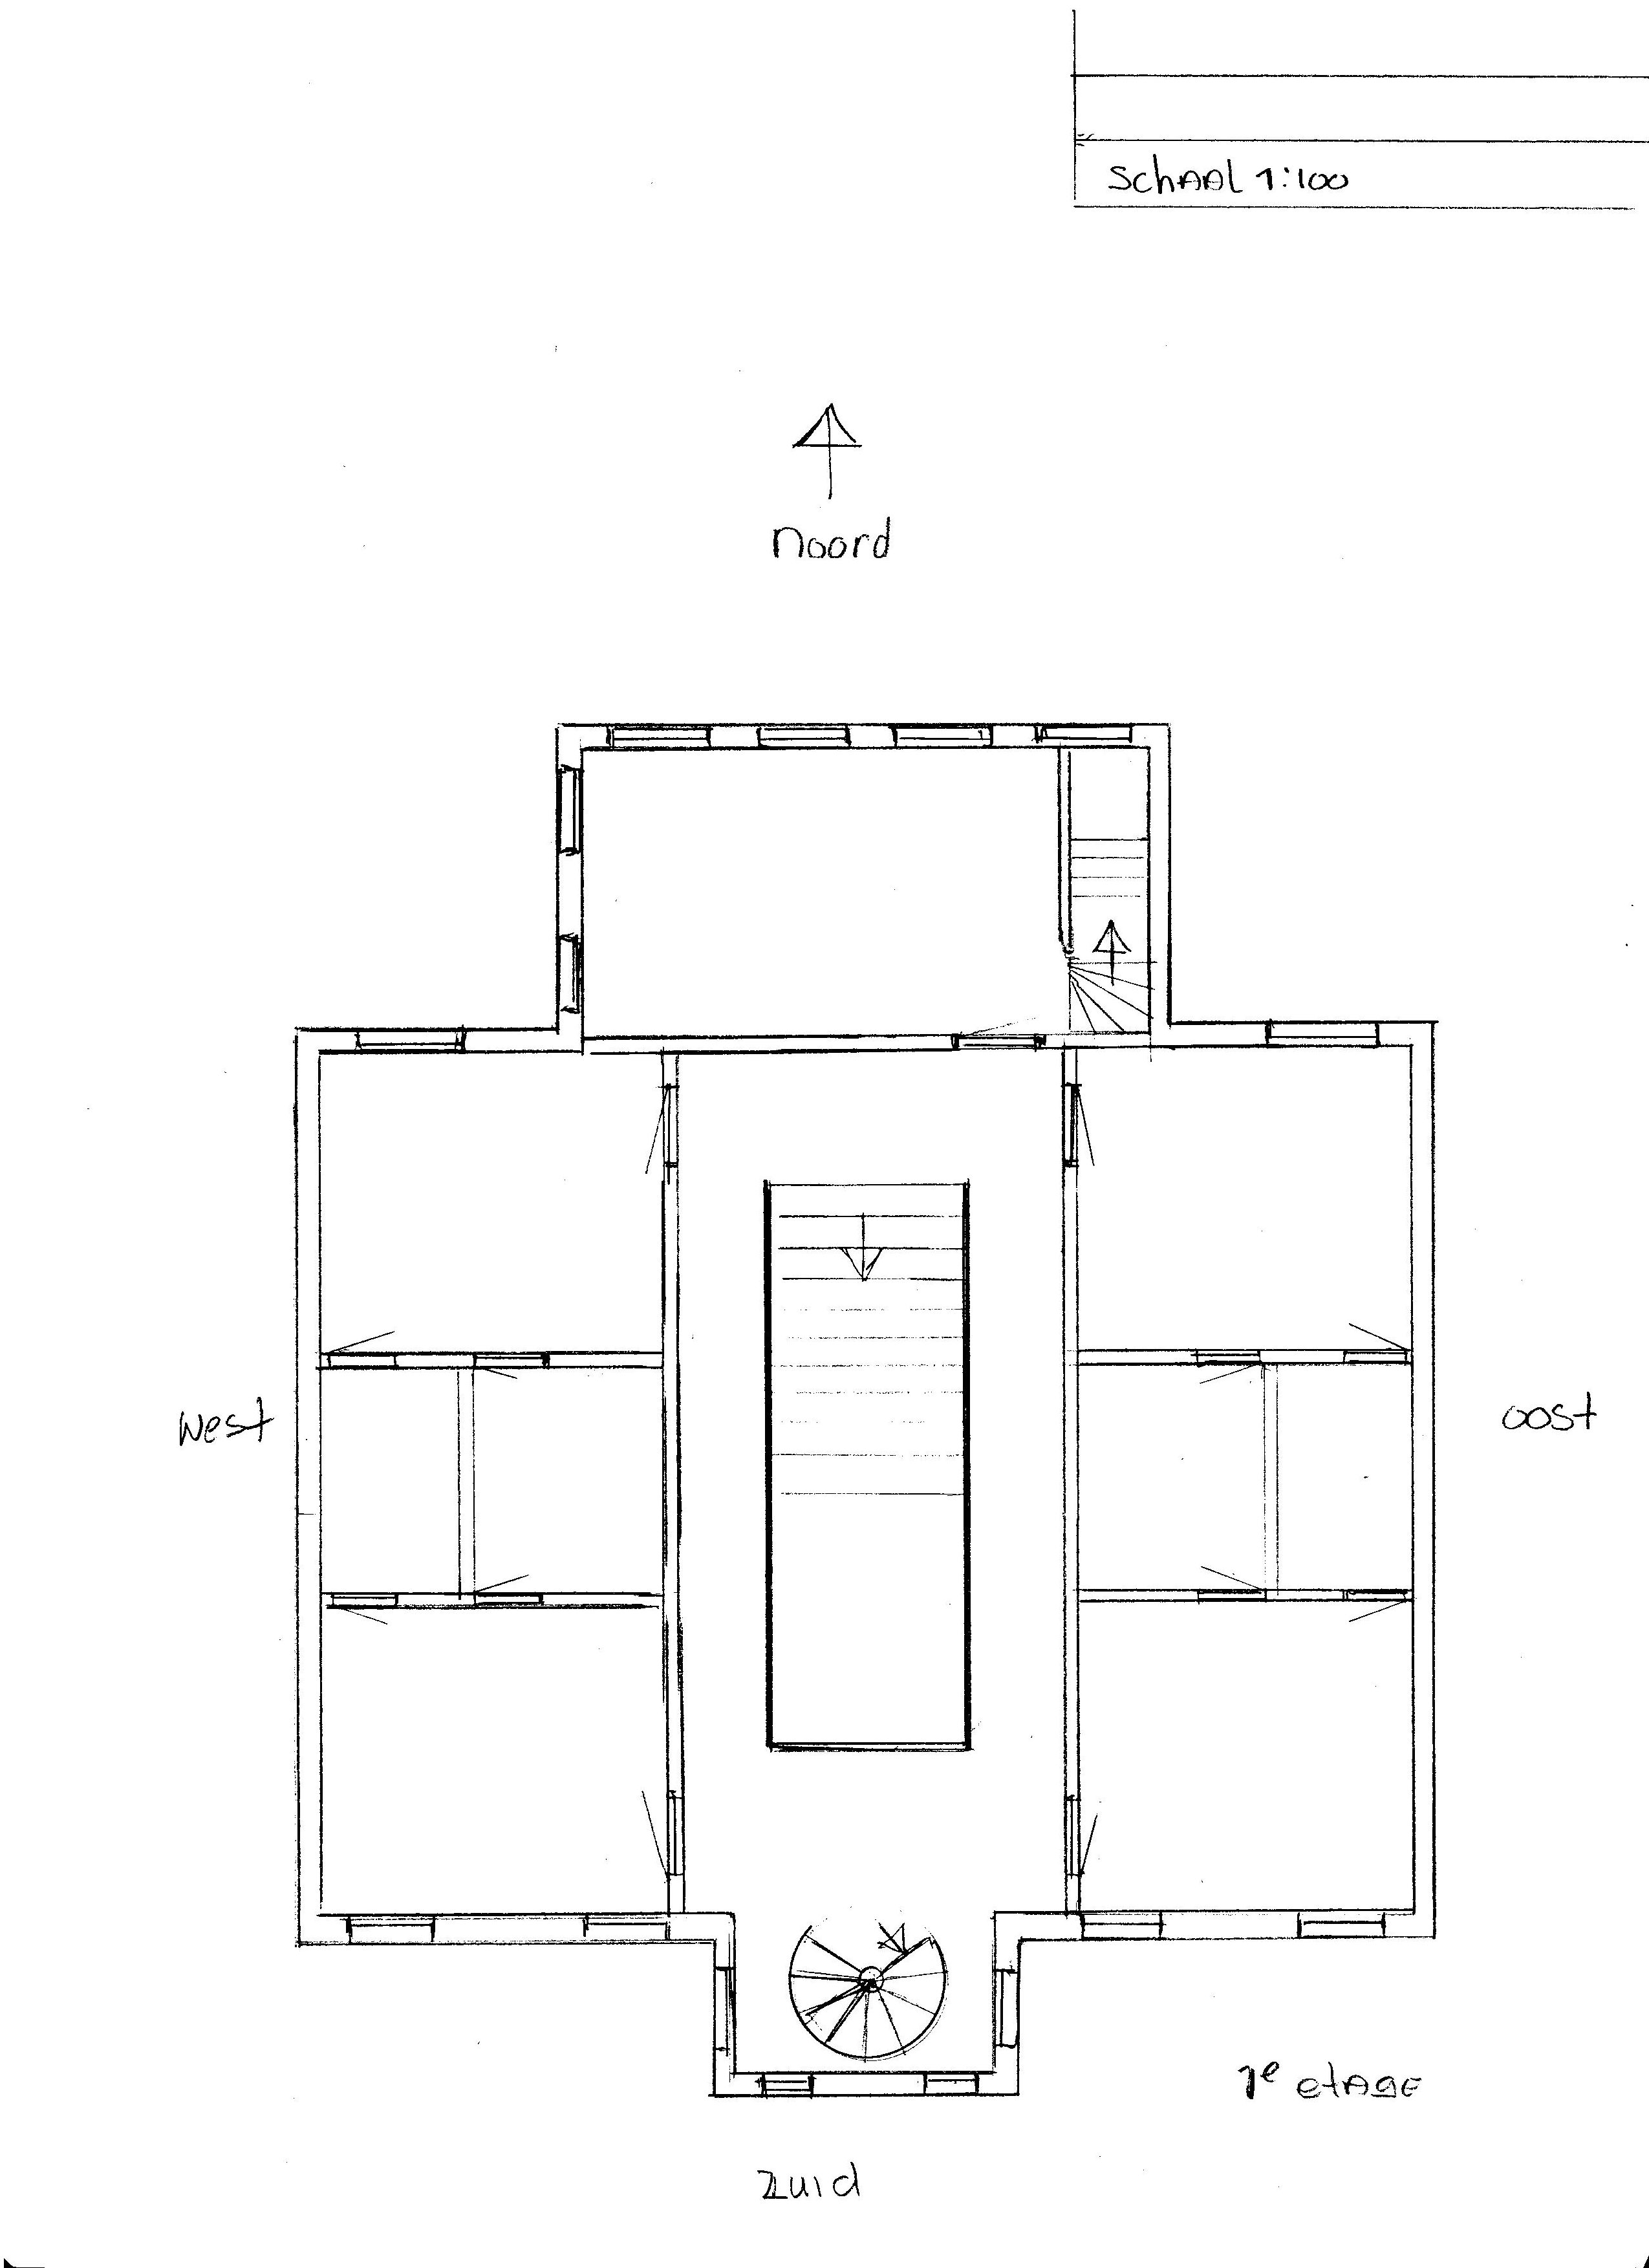 eerste verdieping – slaapkamers